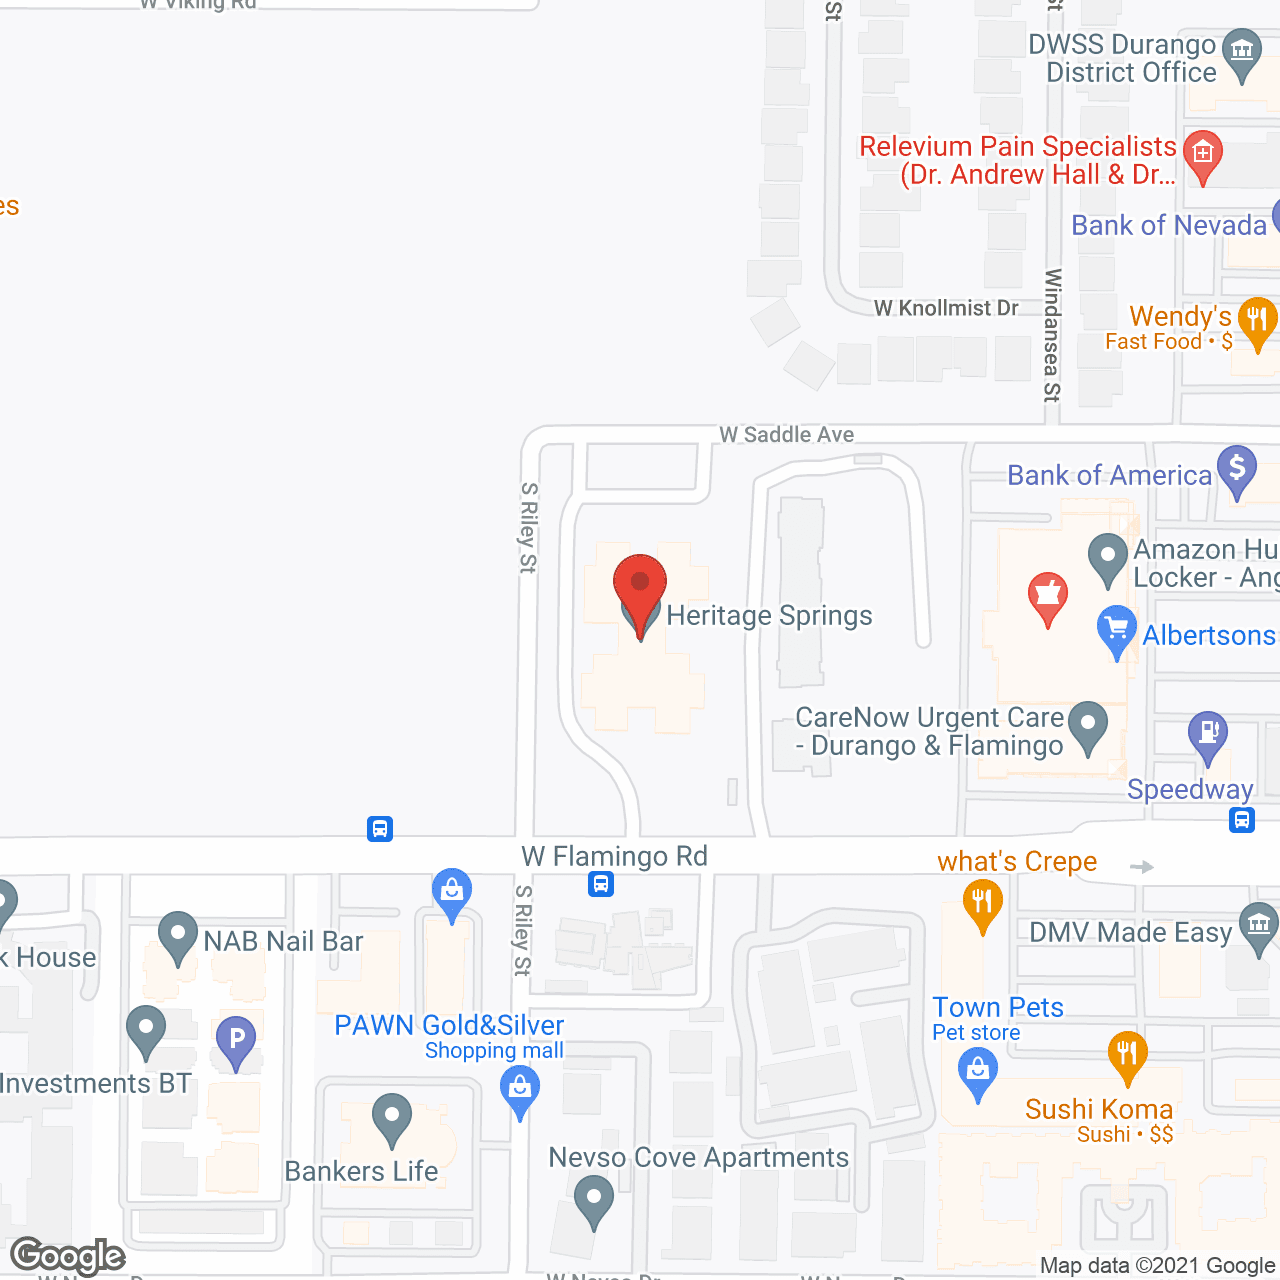 Heritage Springs in google map